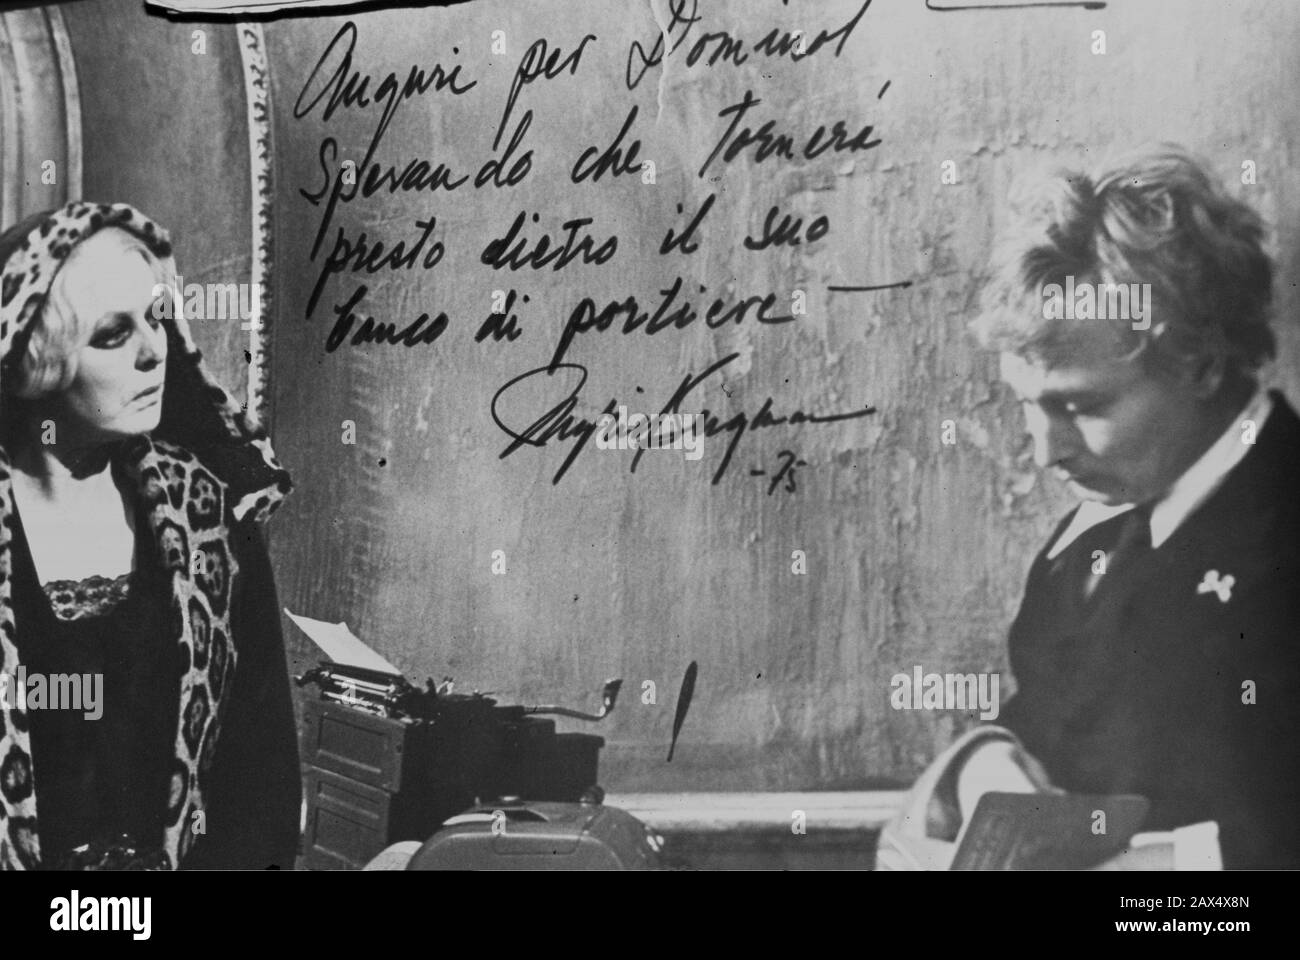 2001 , décembre , Rome , Italie : L'ancienne femme impersonator interprète , artiste visuel et chanteur , l'acteur DOMINOT ( né Antonio Iacono , 1930 - 2014 ) dans son Cabaret BAROOTAN 4 BELLEZZE ( Via di Panico 23 ) Montrer une photo autographiée vintage avec lui et l'actrice INGRID BERGMAN pendant la photo du film une affaire DE TEMPS ( 1976 - NINA ) par Vincente Minnelli - Dominot était déjà UN acteur GAY pour Fellini à LA DOLCE VITA ( 1960 ) - Artista - attore - travestito - cantante - propriétaire de bar de nuit - Roma - travestite - Homosexualité - Homosexuel - omosessuale - omosessualità - no de lieu Banque D'Images